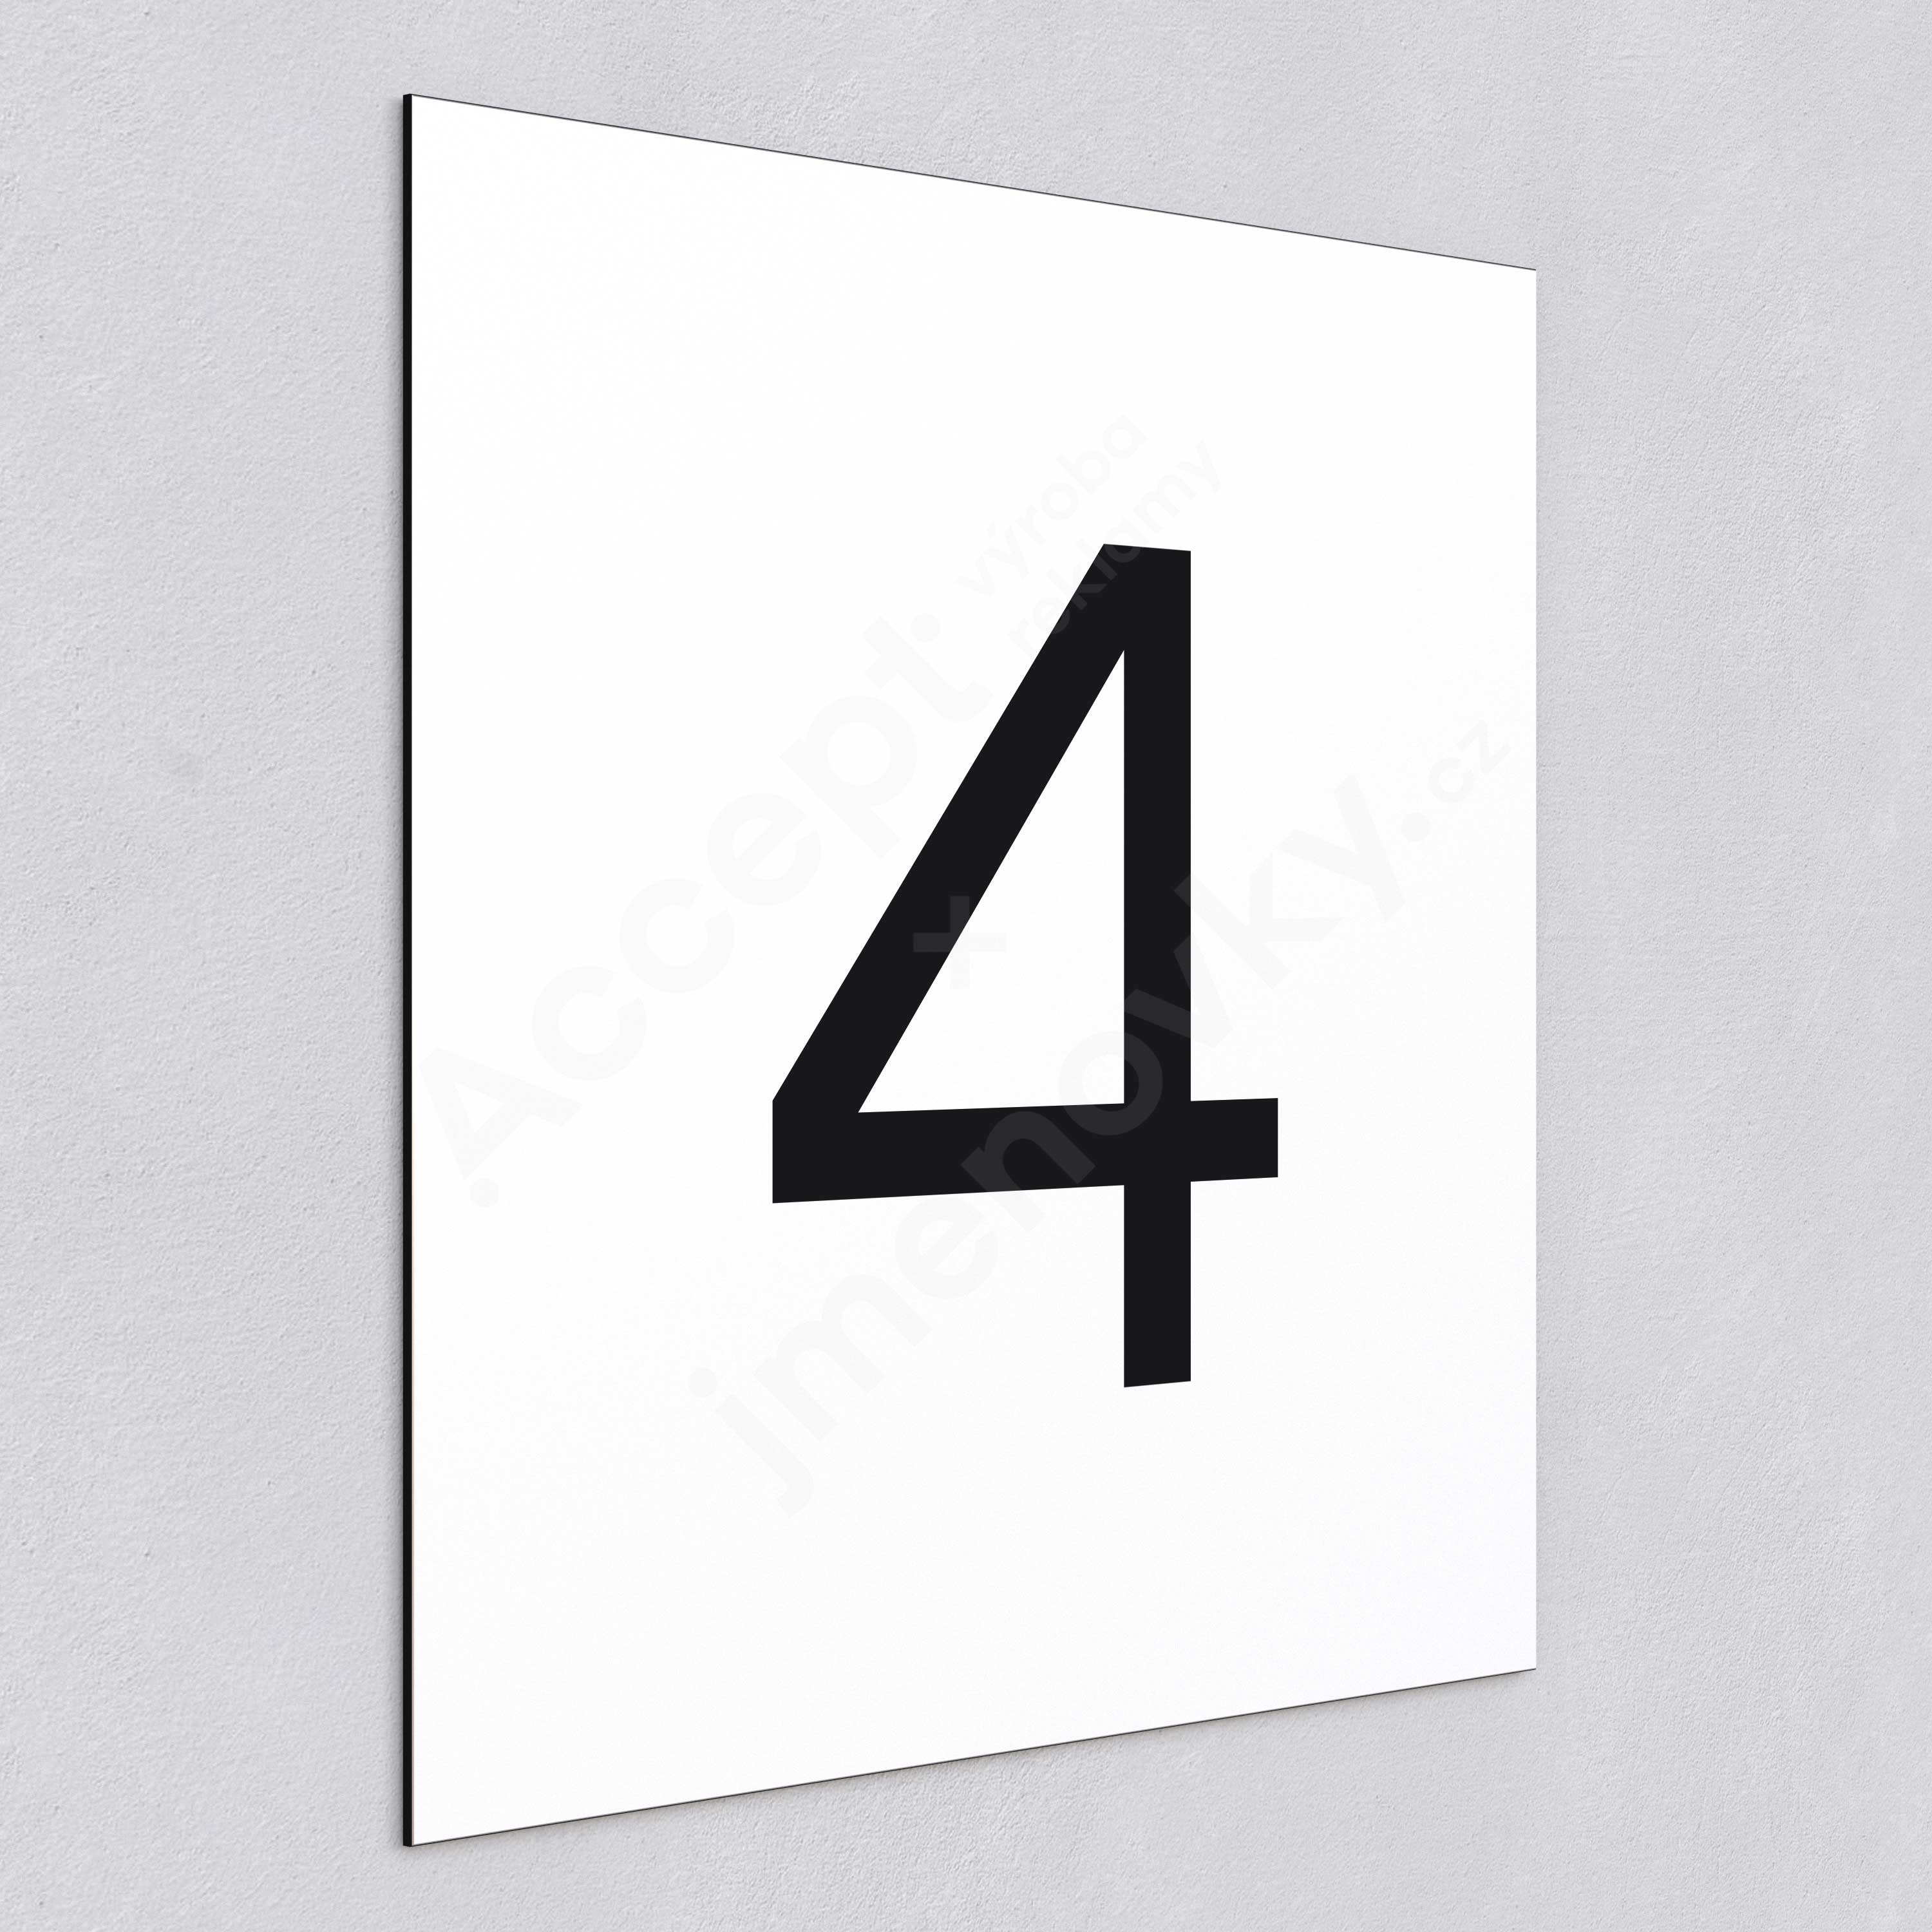 Označení podlaží - číslo "4" - bílá tabulka - černý popis